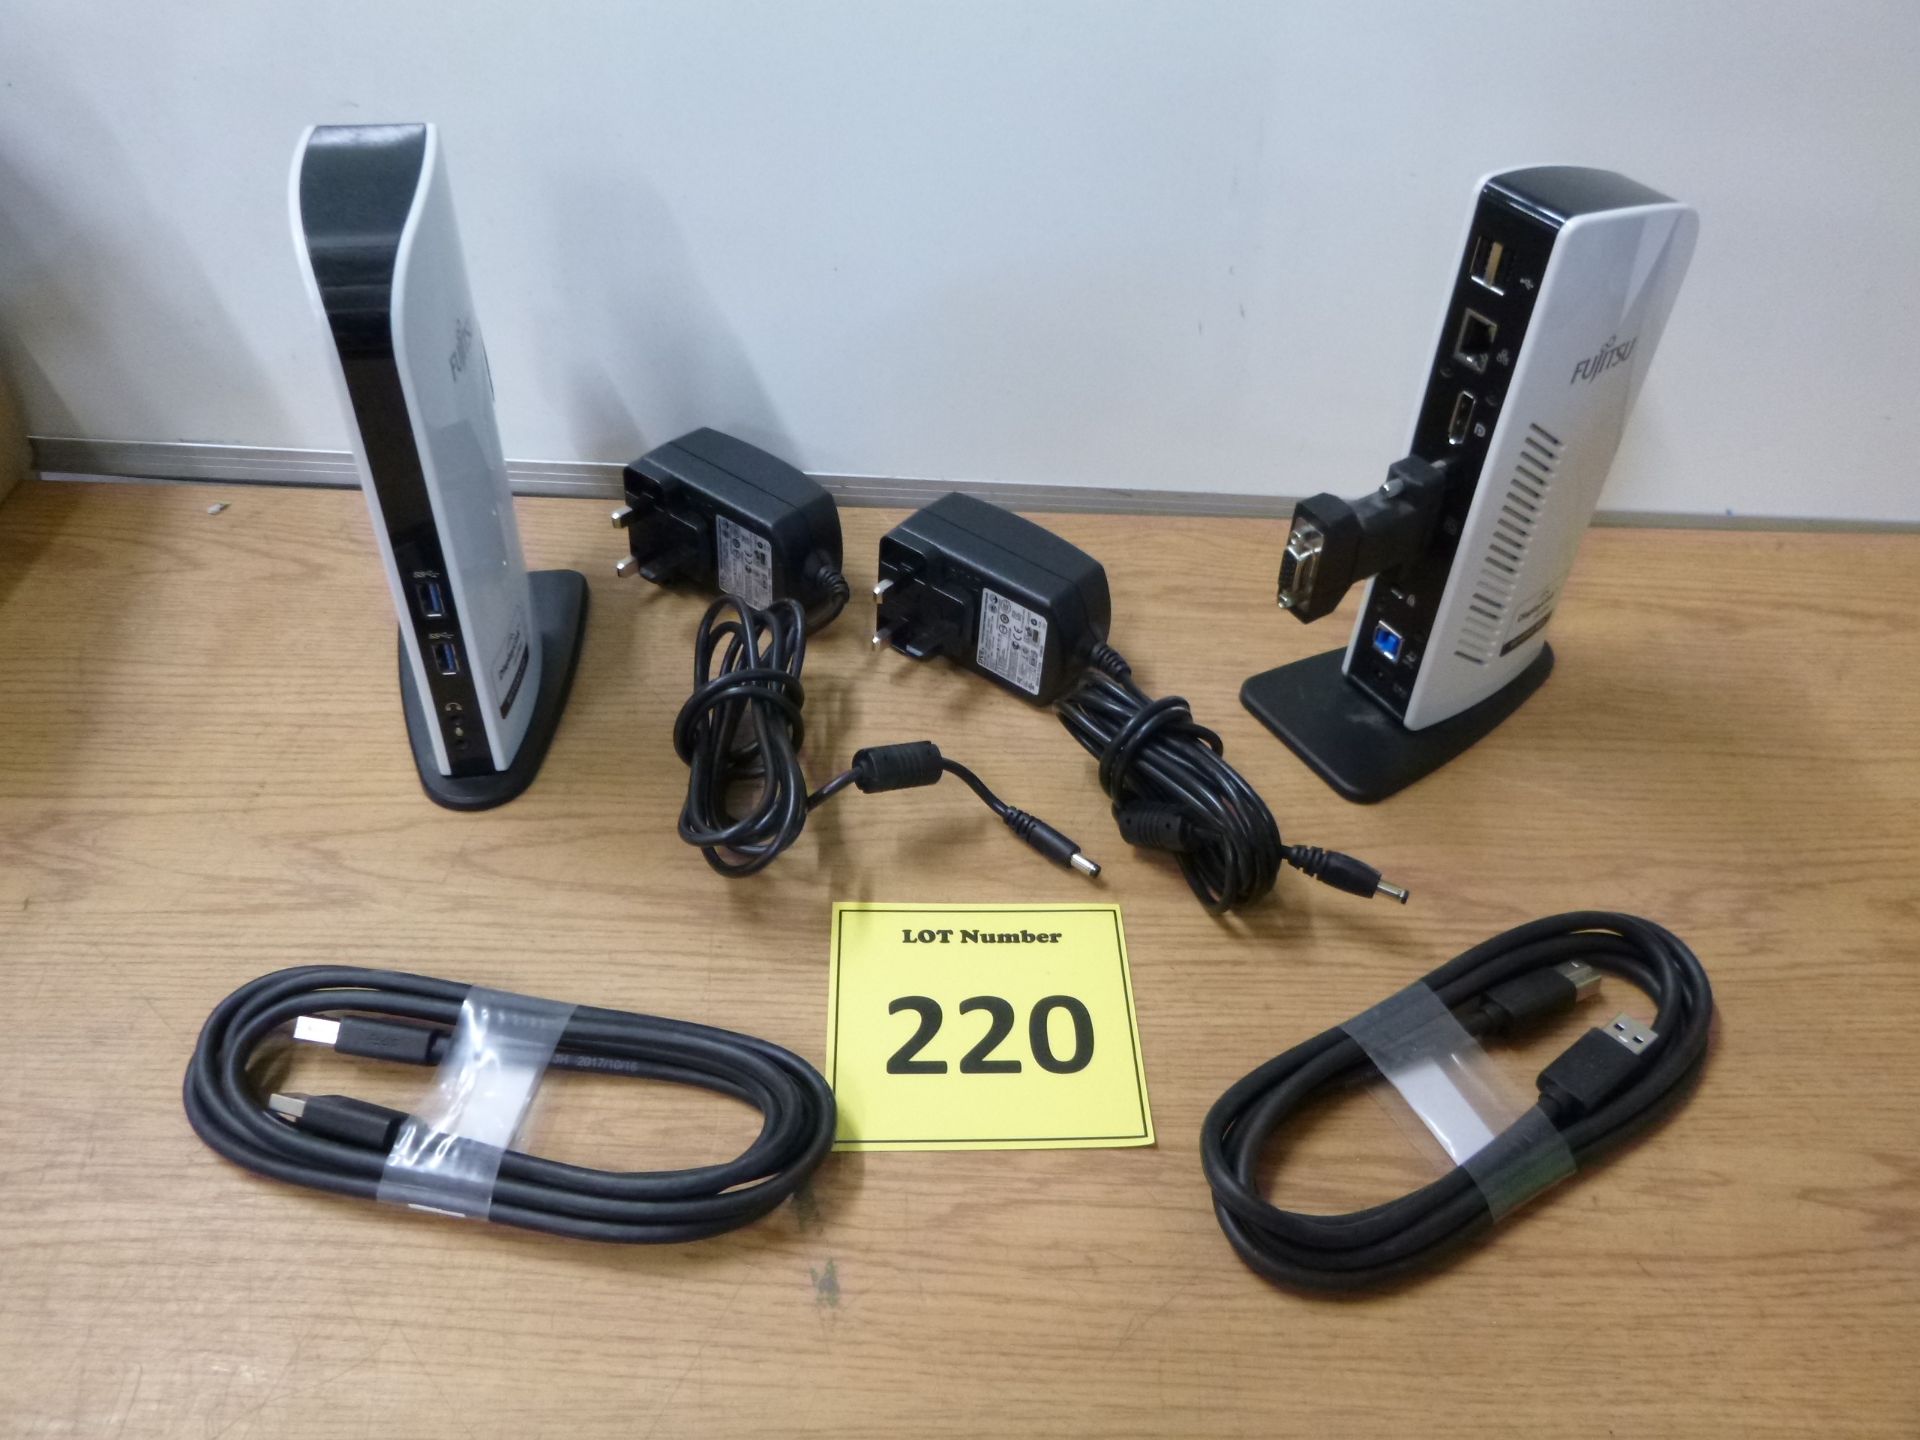 2 X Fujitsu USB 3.0 PR08 Port Replicator Docking Station. DVI with VGA converter+ Display Port + LAN